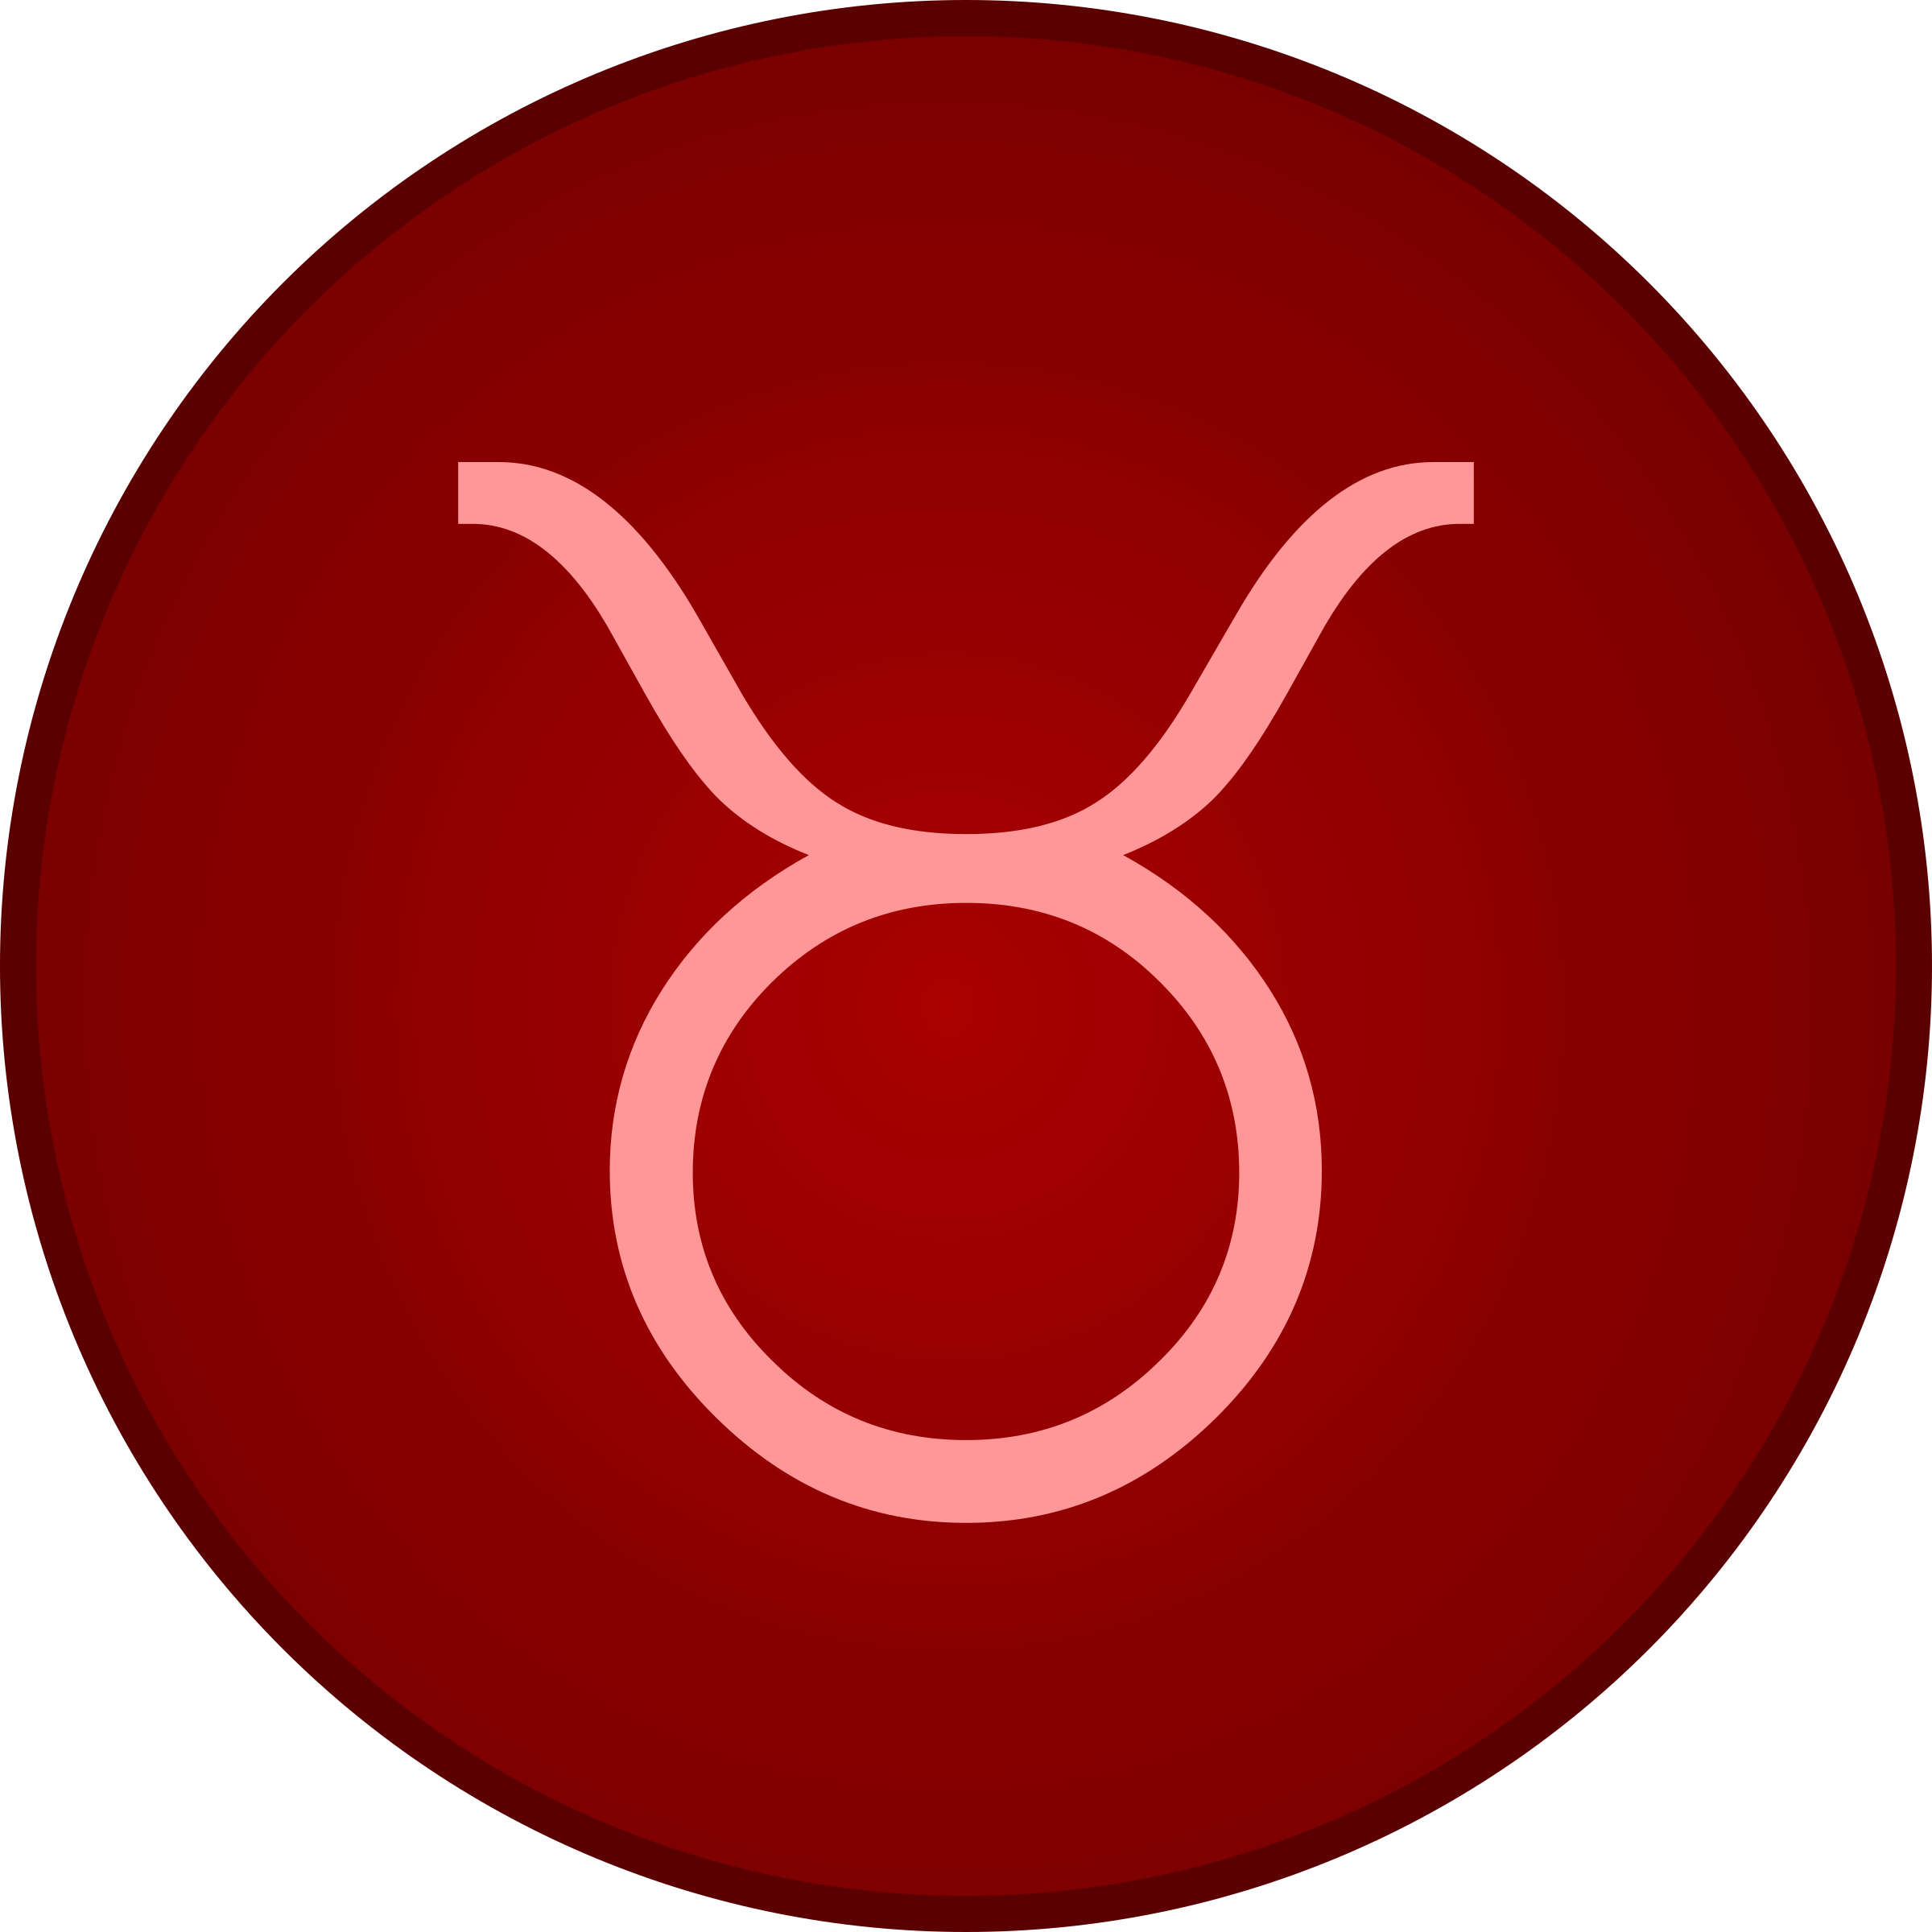 Clipart - Taurus symbol